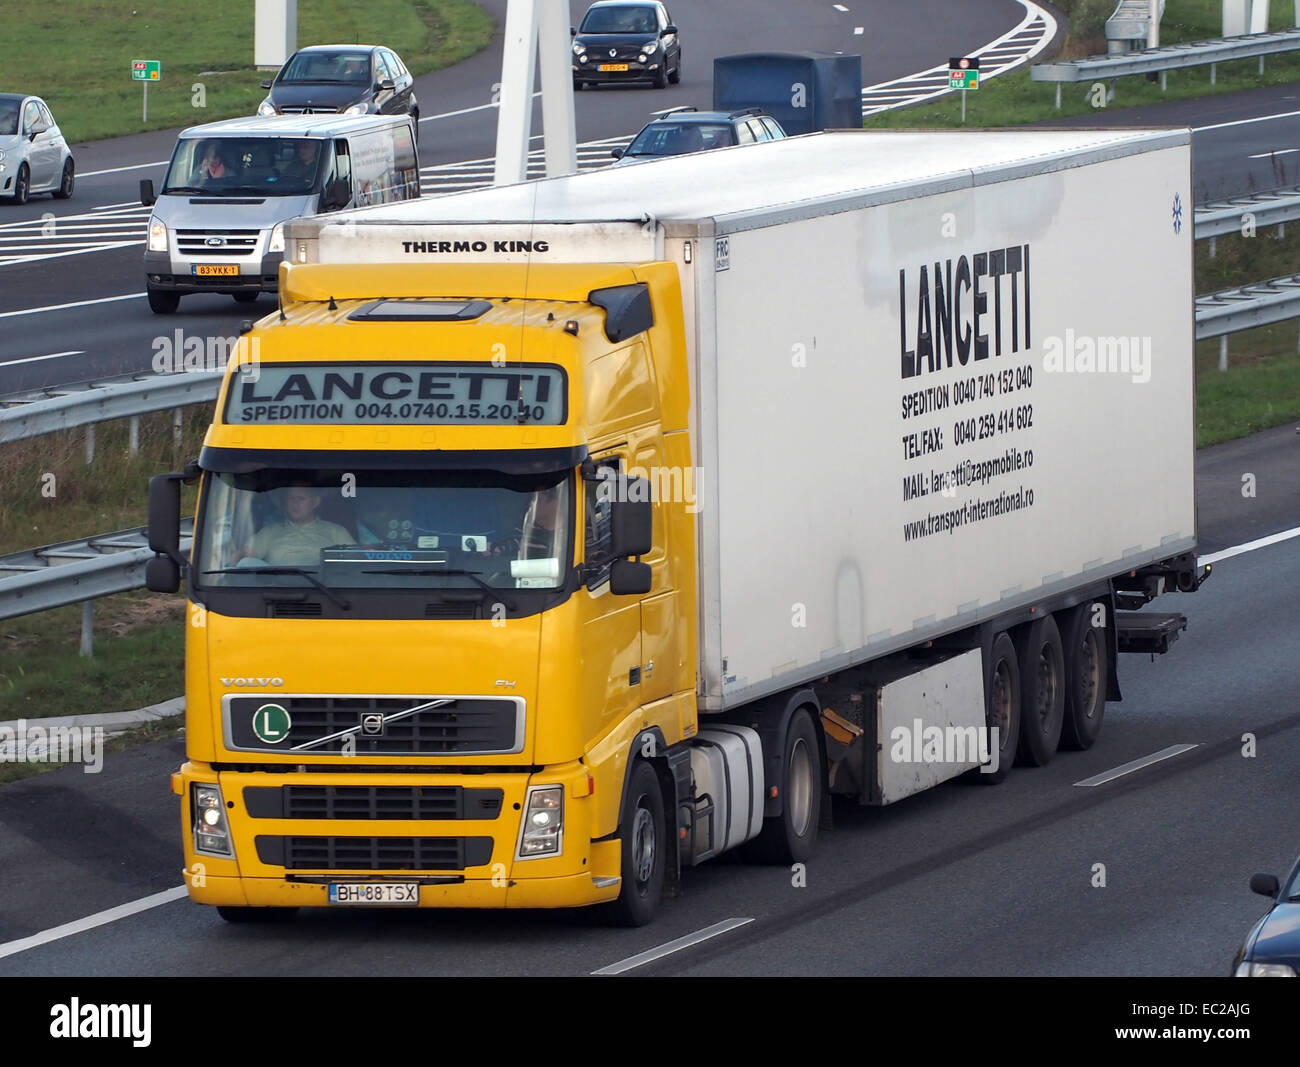 Volvo FH, Lancetti Foto de stock